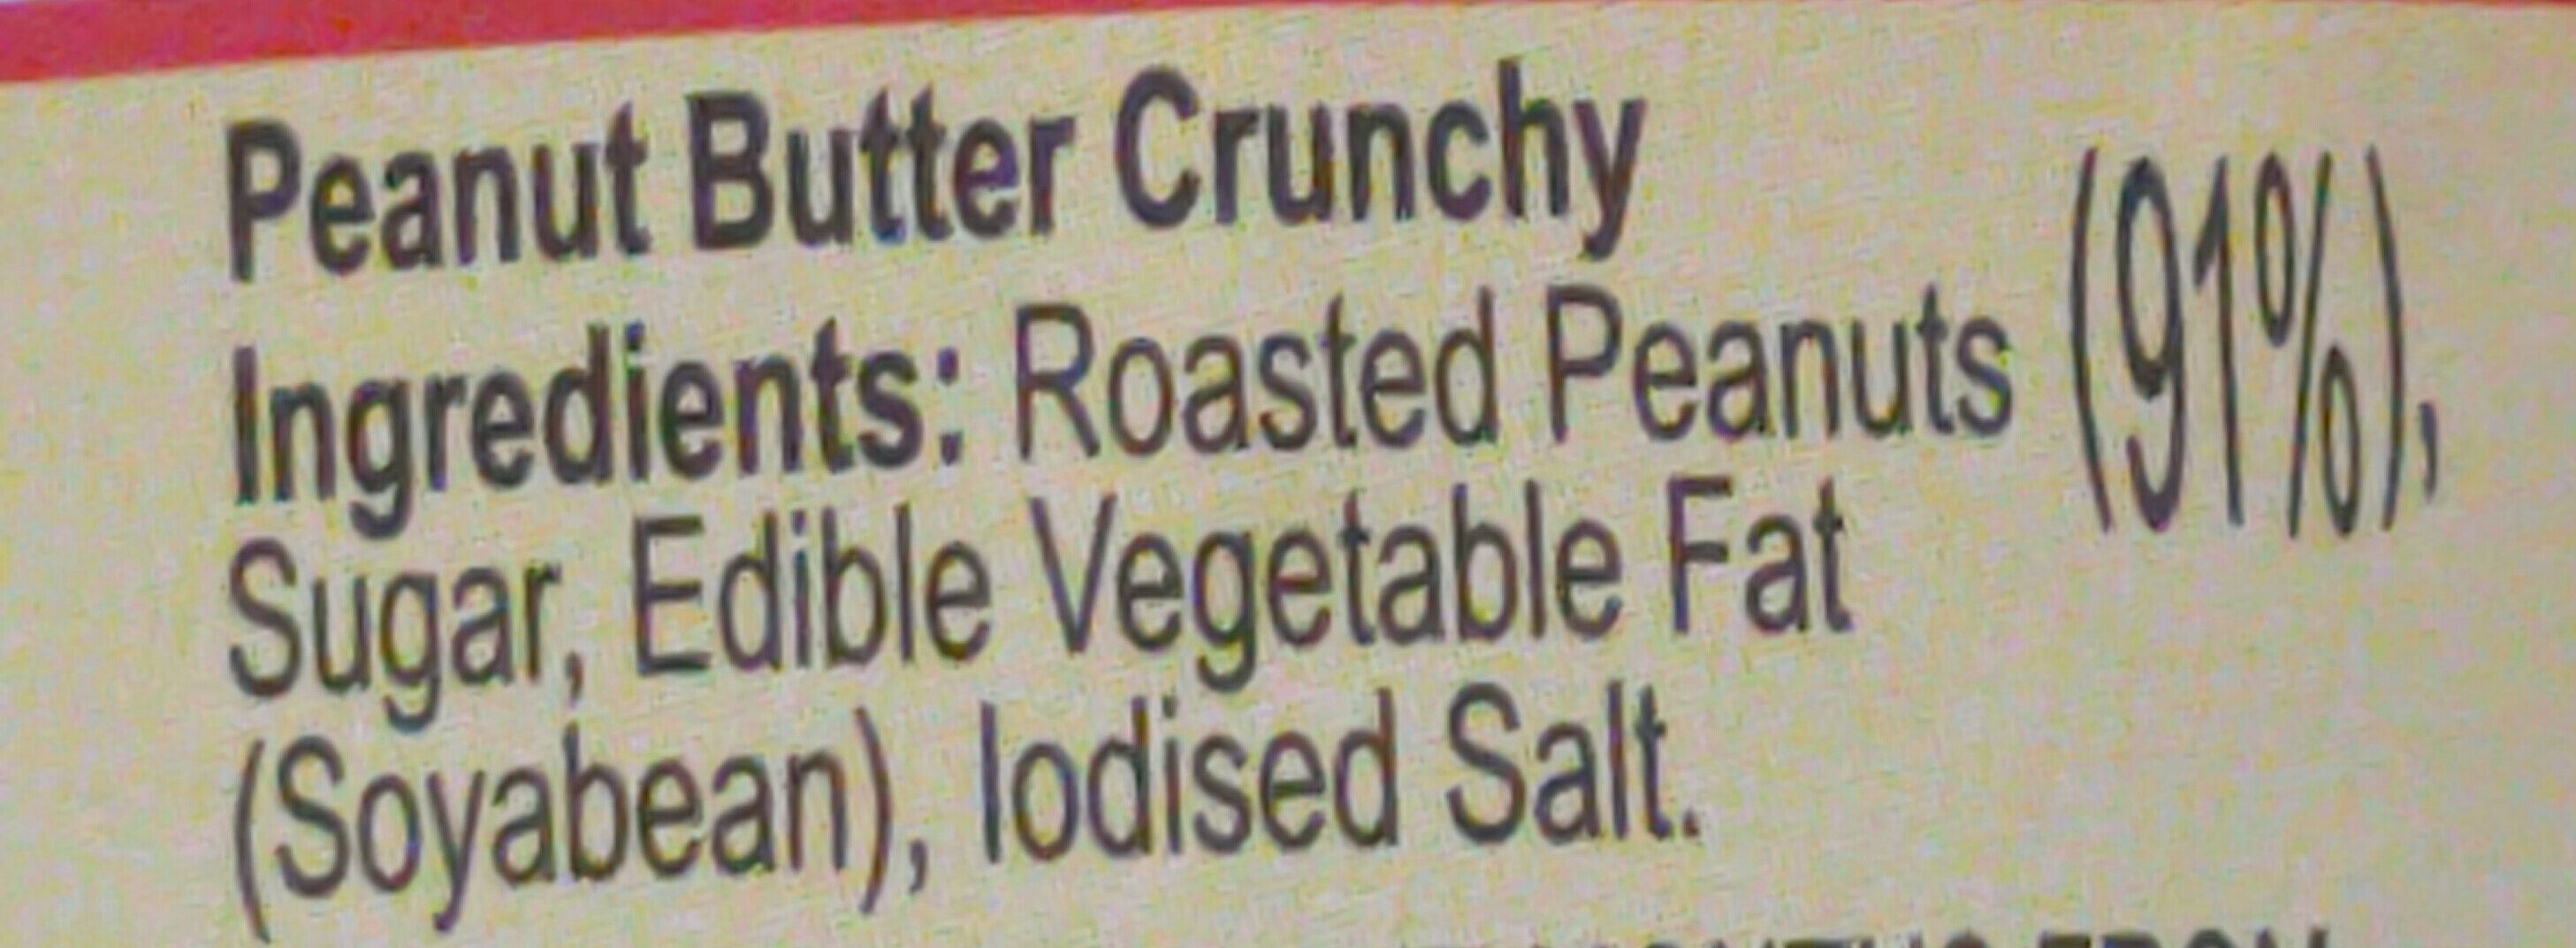 Peanut Butter Crunchy - Ingredients